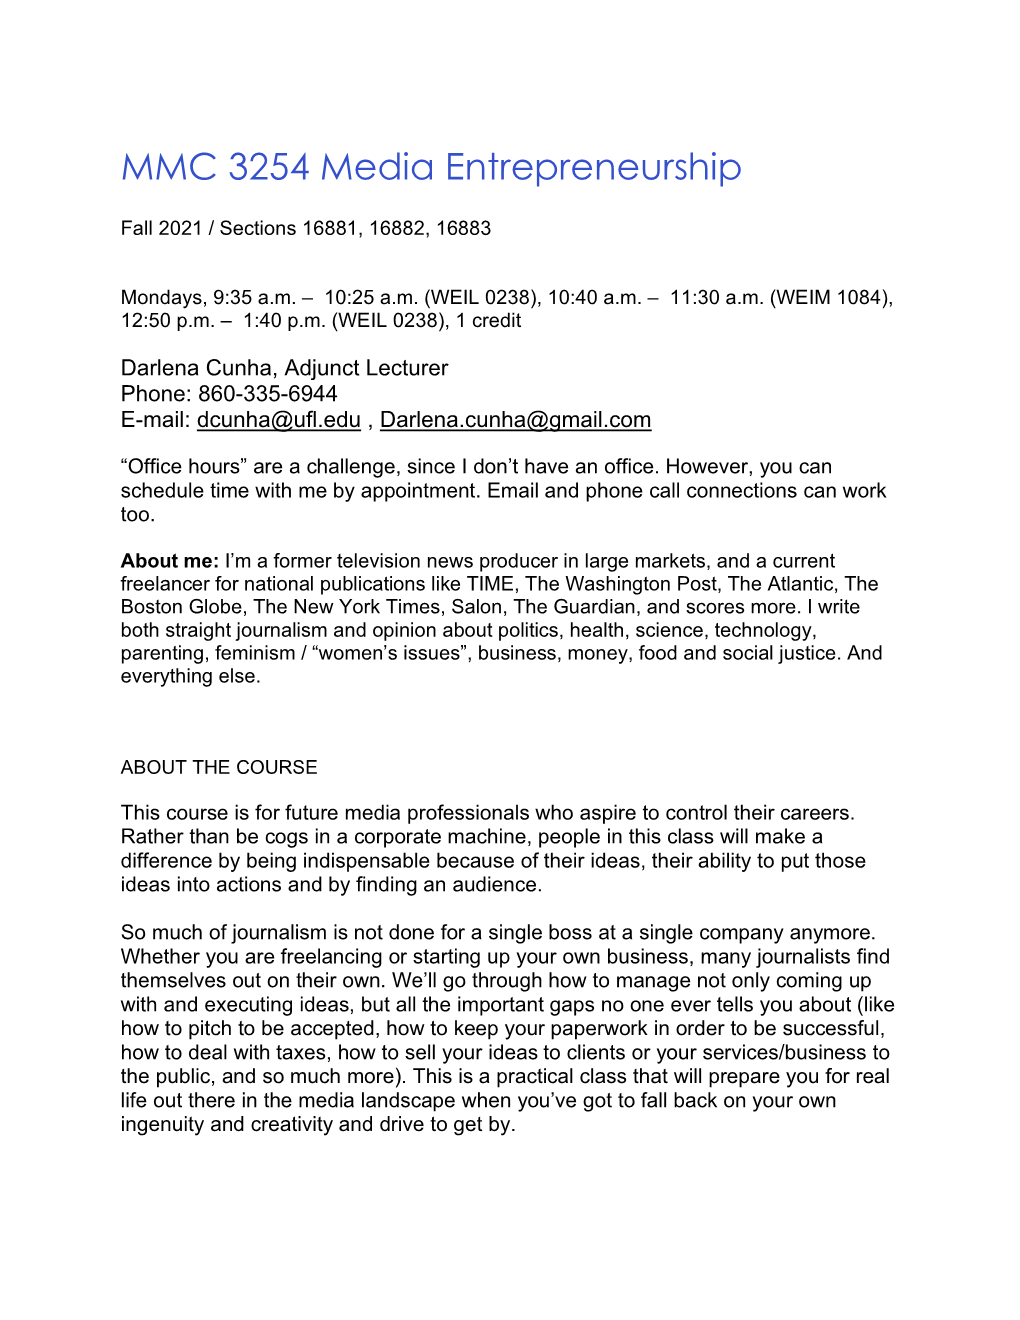 MMC3254-Media Entreprenuership-Cunha-Fall 2021